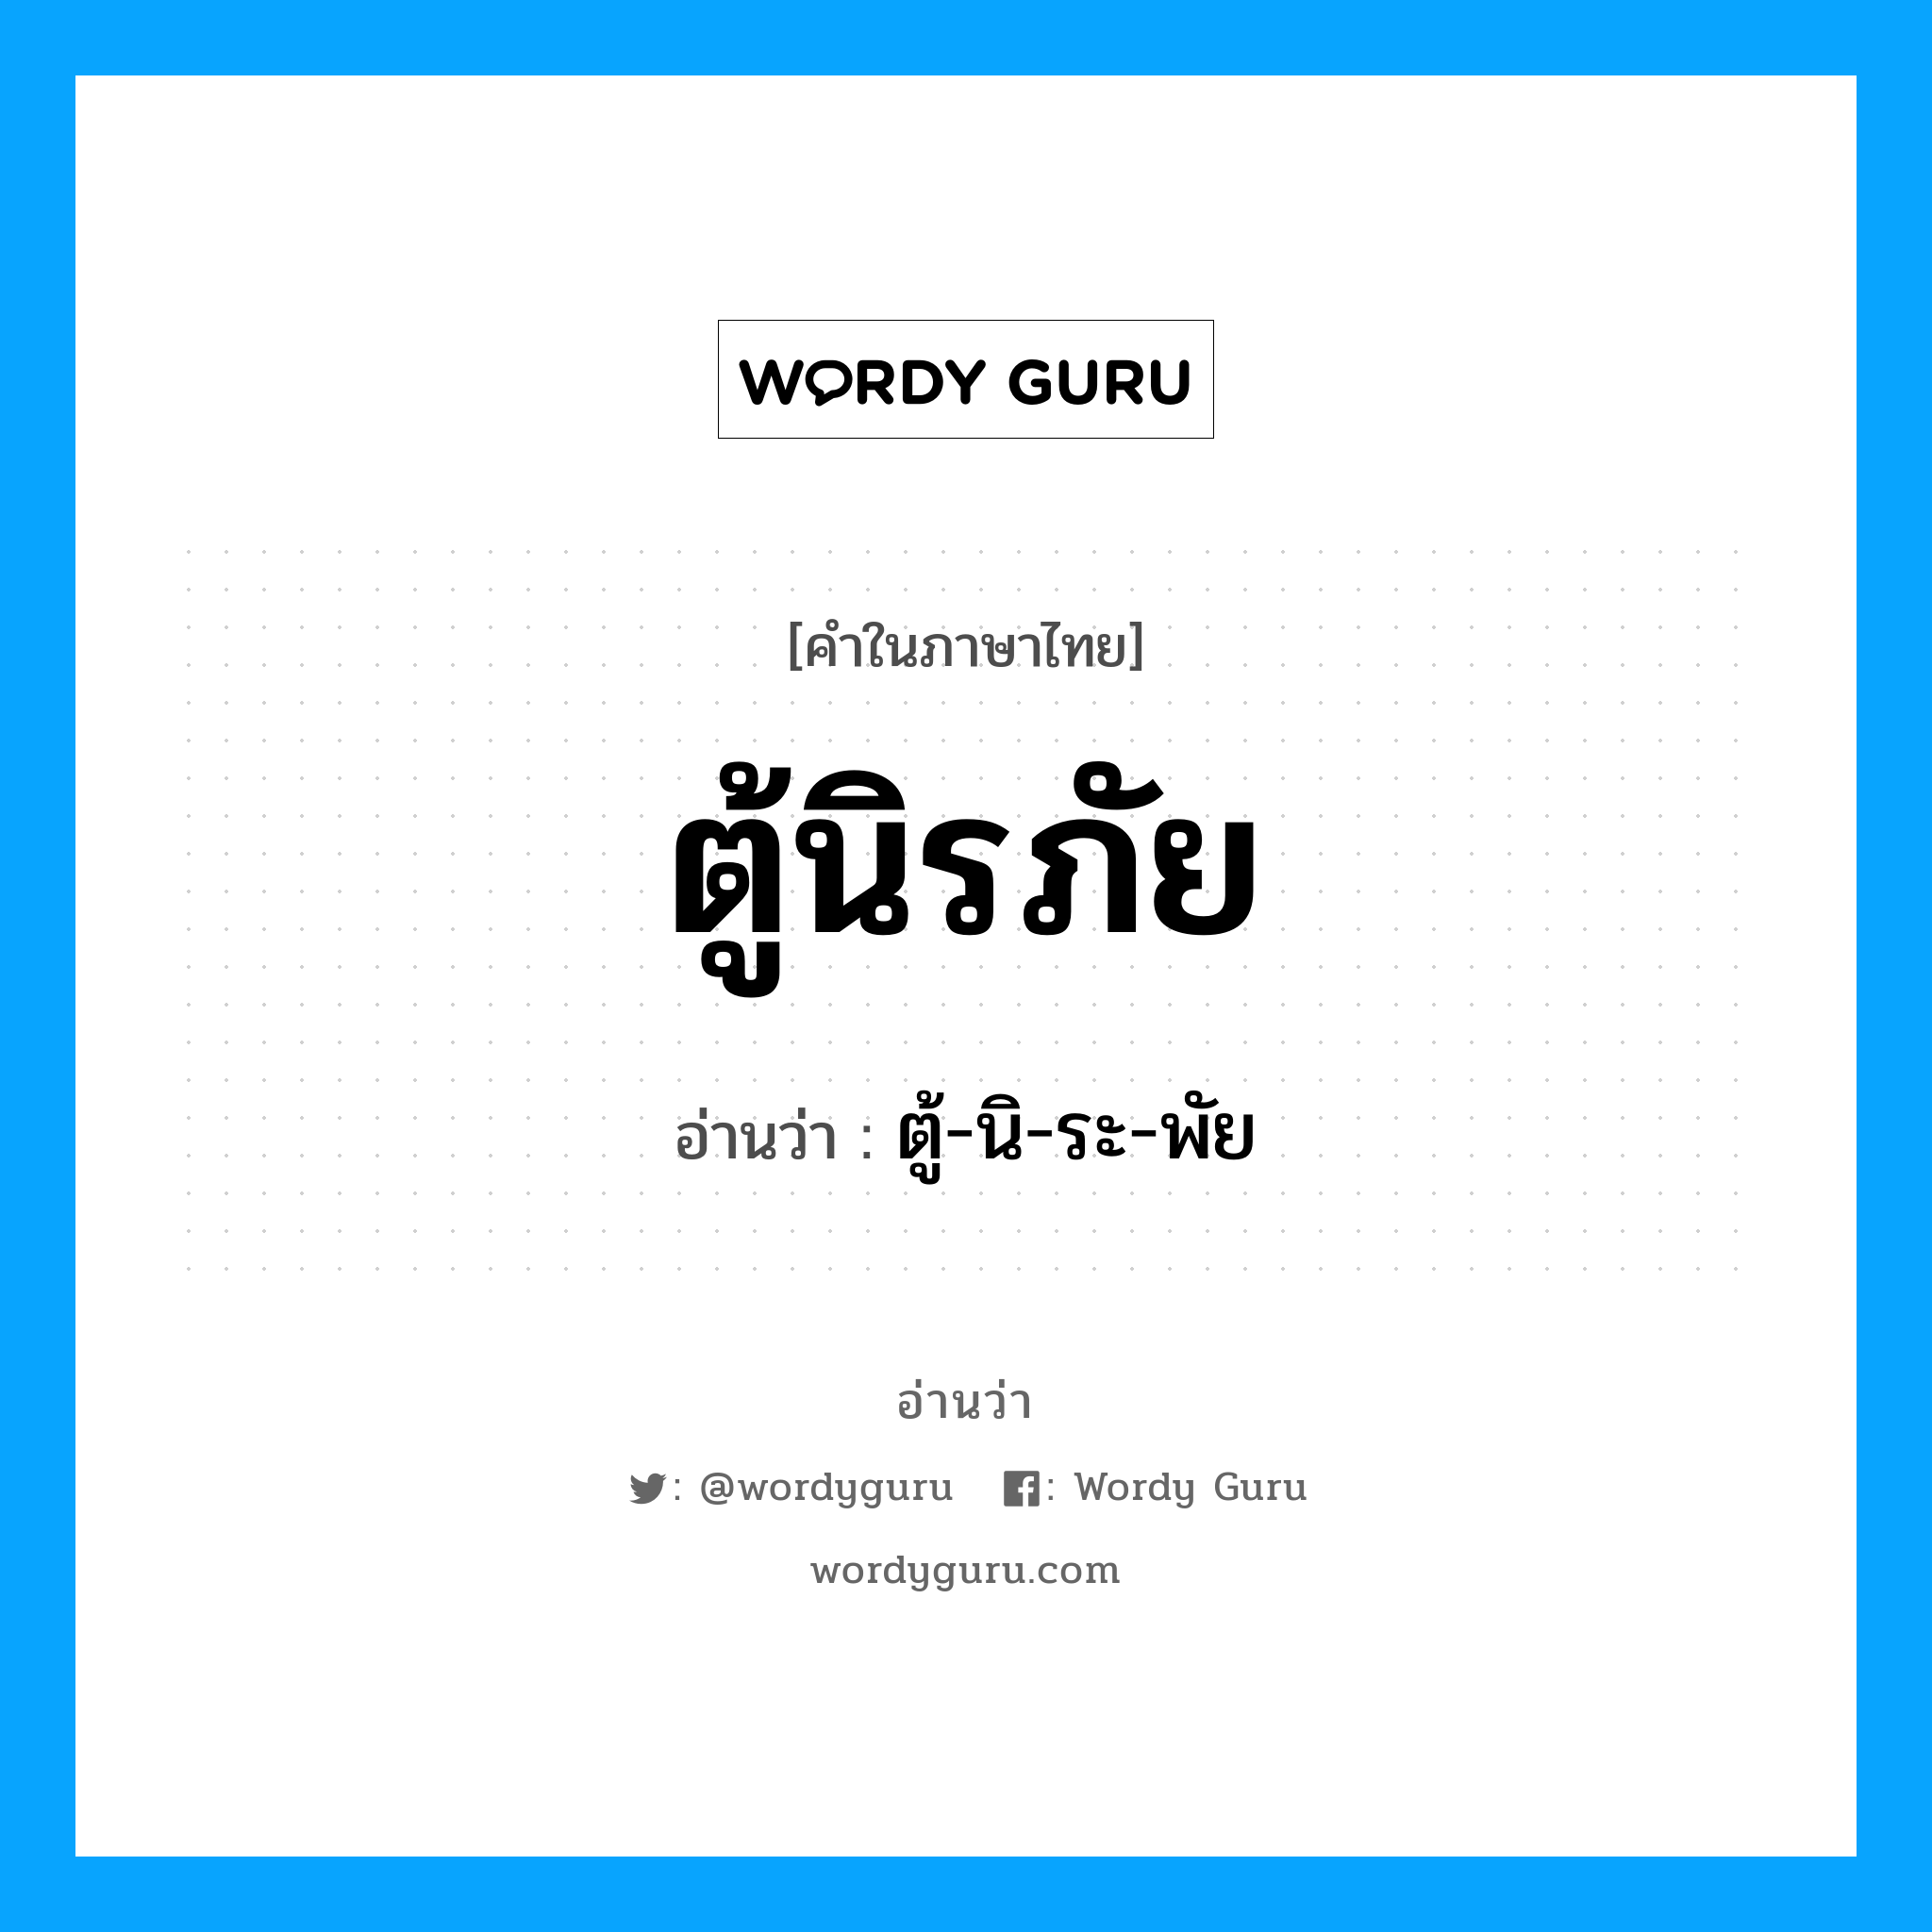 ตู้-นิ-ระ-พัย เป็นคำอ่านของคำไหน?, คำในภาษาไทย ตู้-นิ-ระ-พัย อ่านว่า ตู้นิรภัย